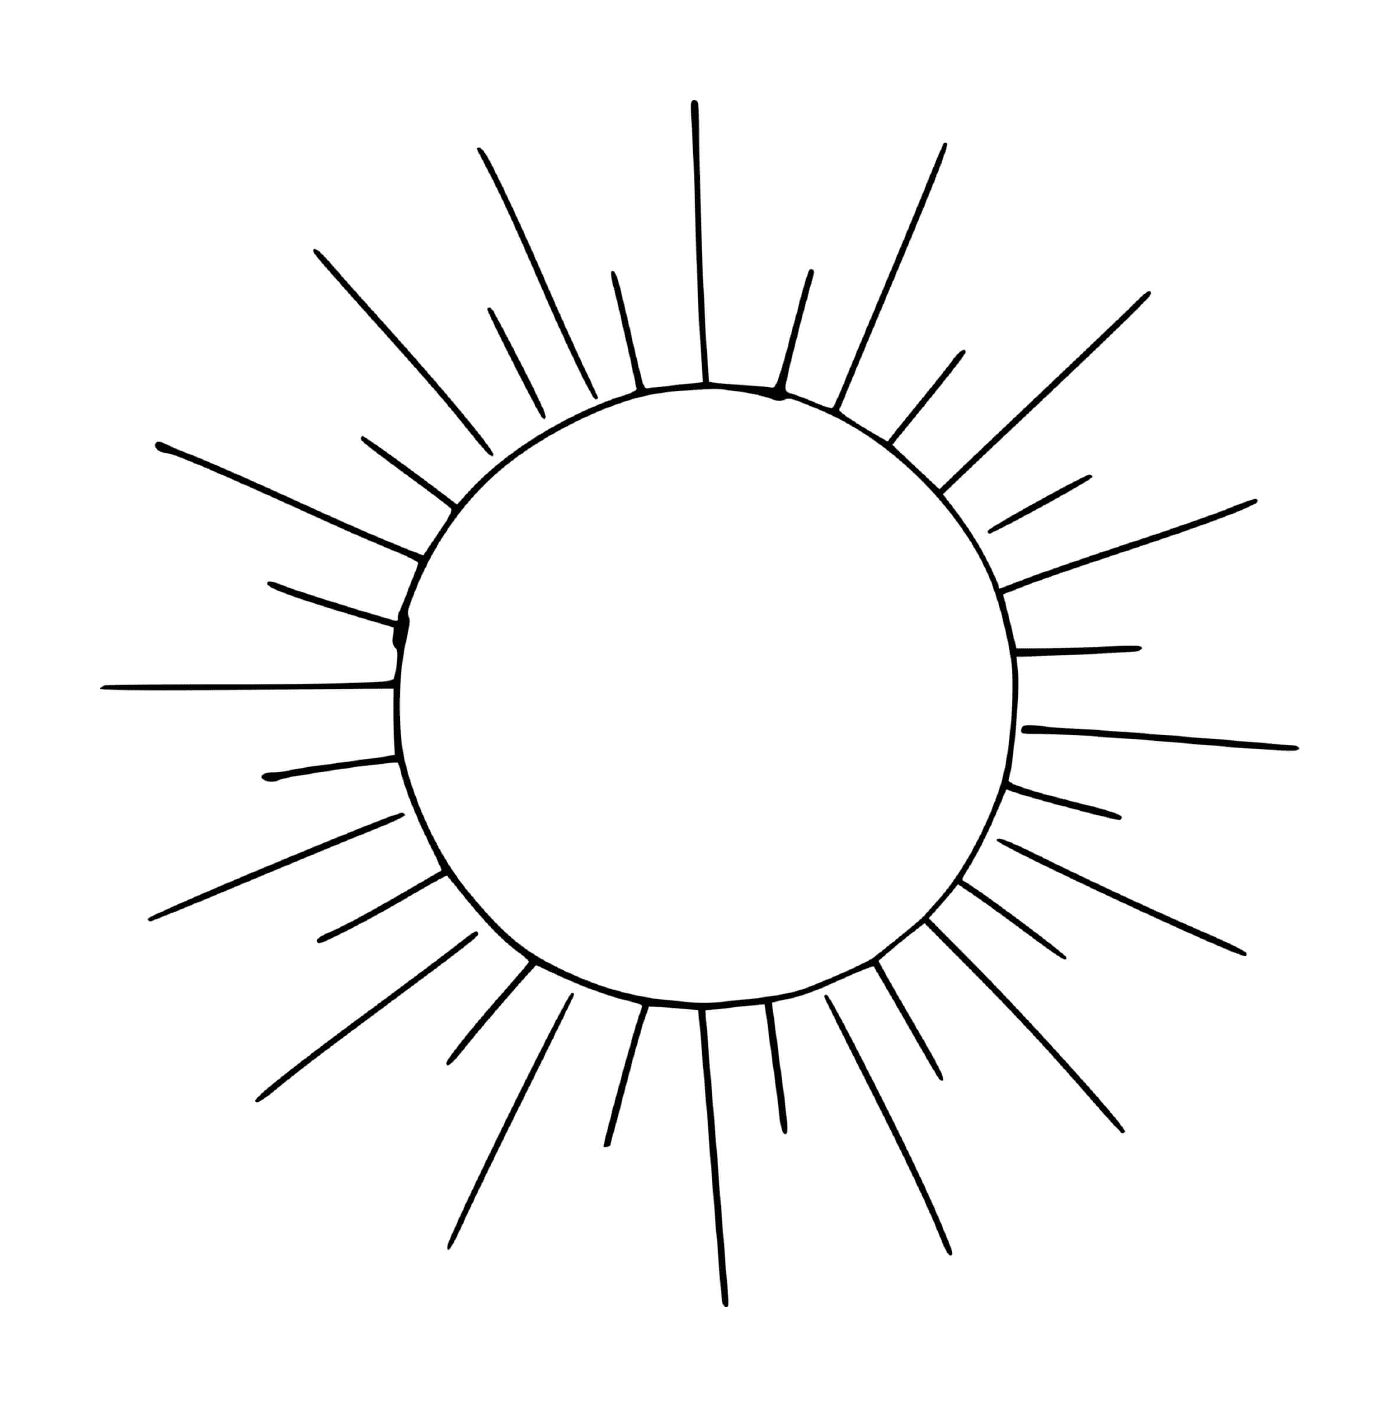  पृथ्वी के निकट सूर्य 